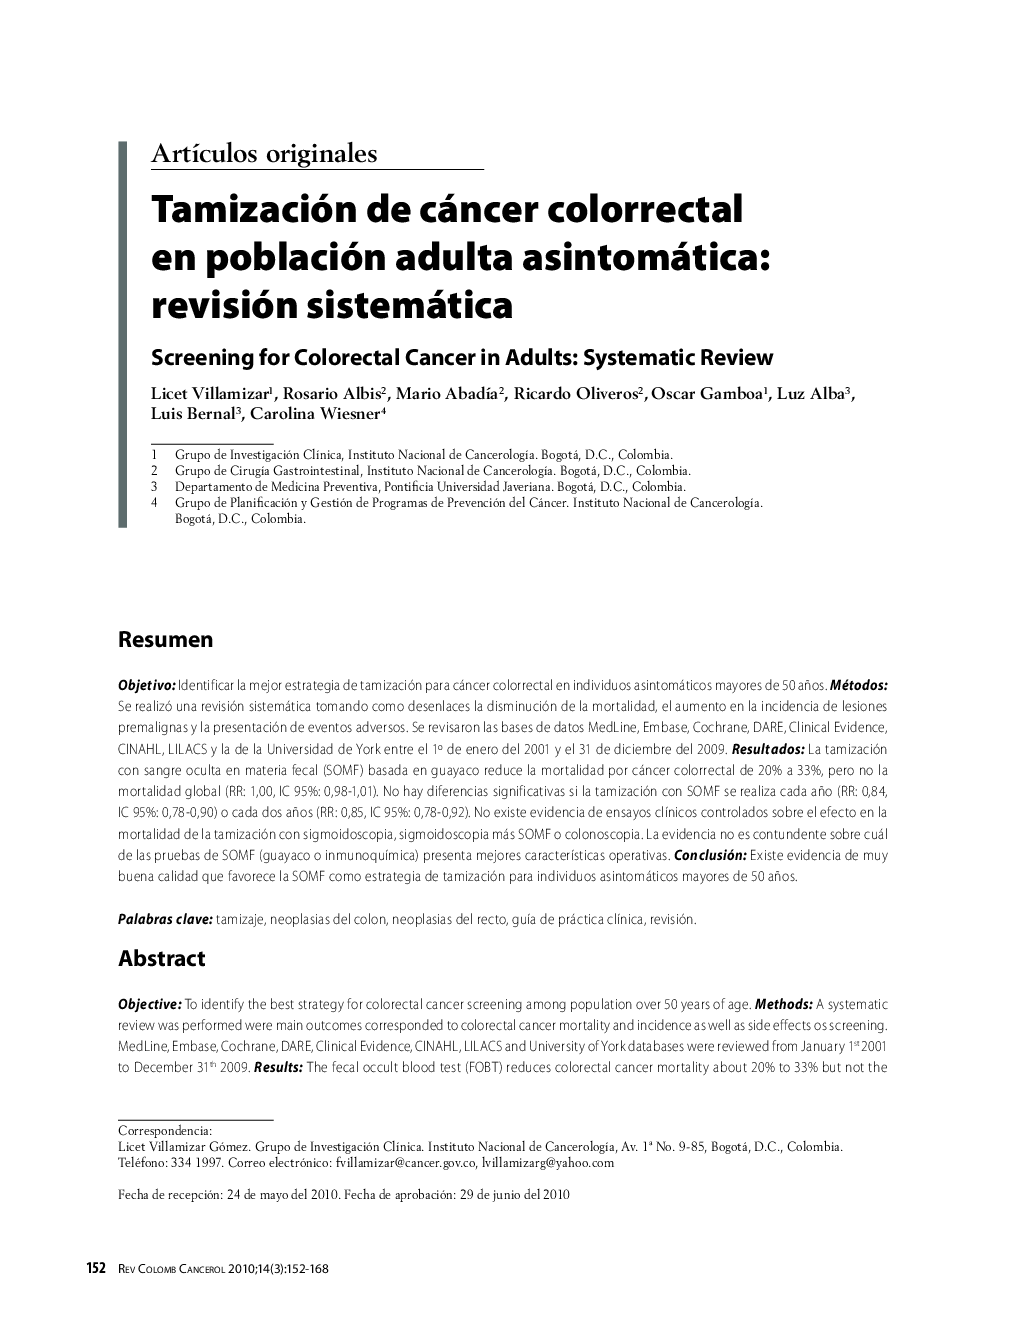 Tamización de cáncer colorrectal en población adulta asintomática: revisión sistemáticaScreening for Colorectal Cancer in Adults: Systematic Review